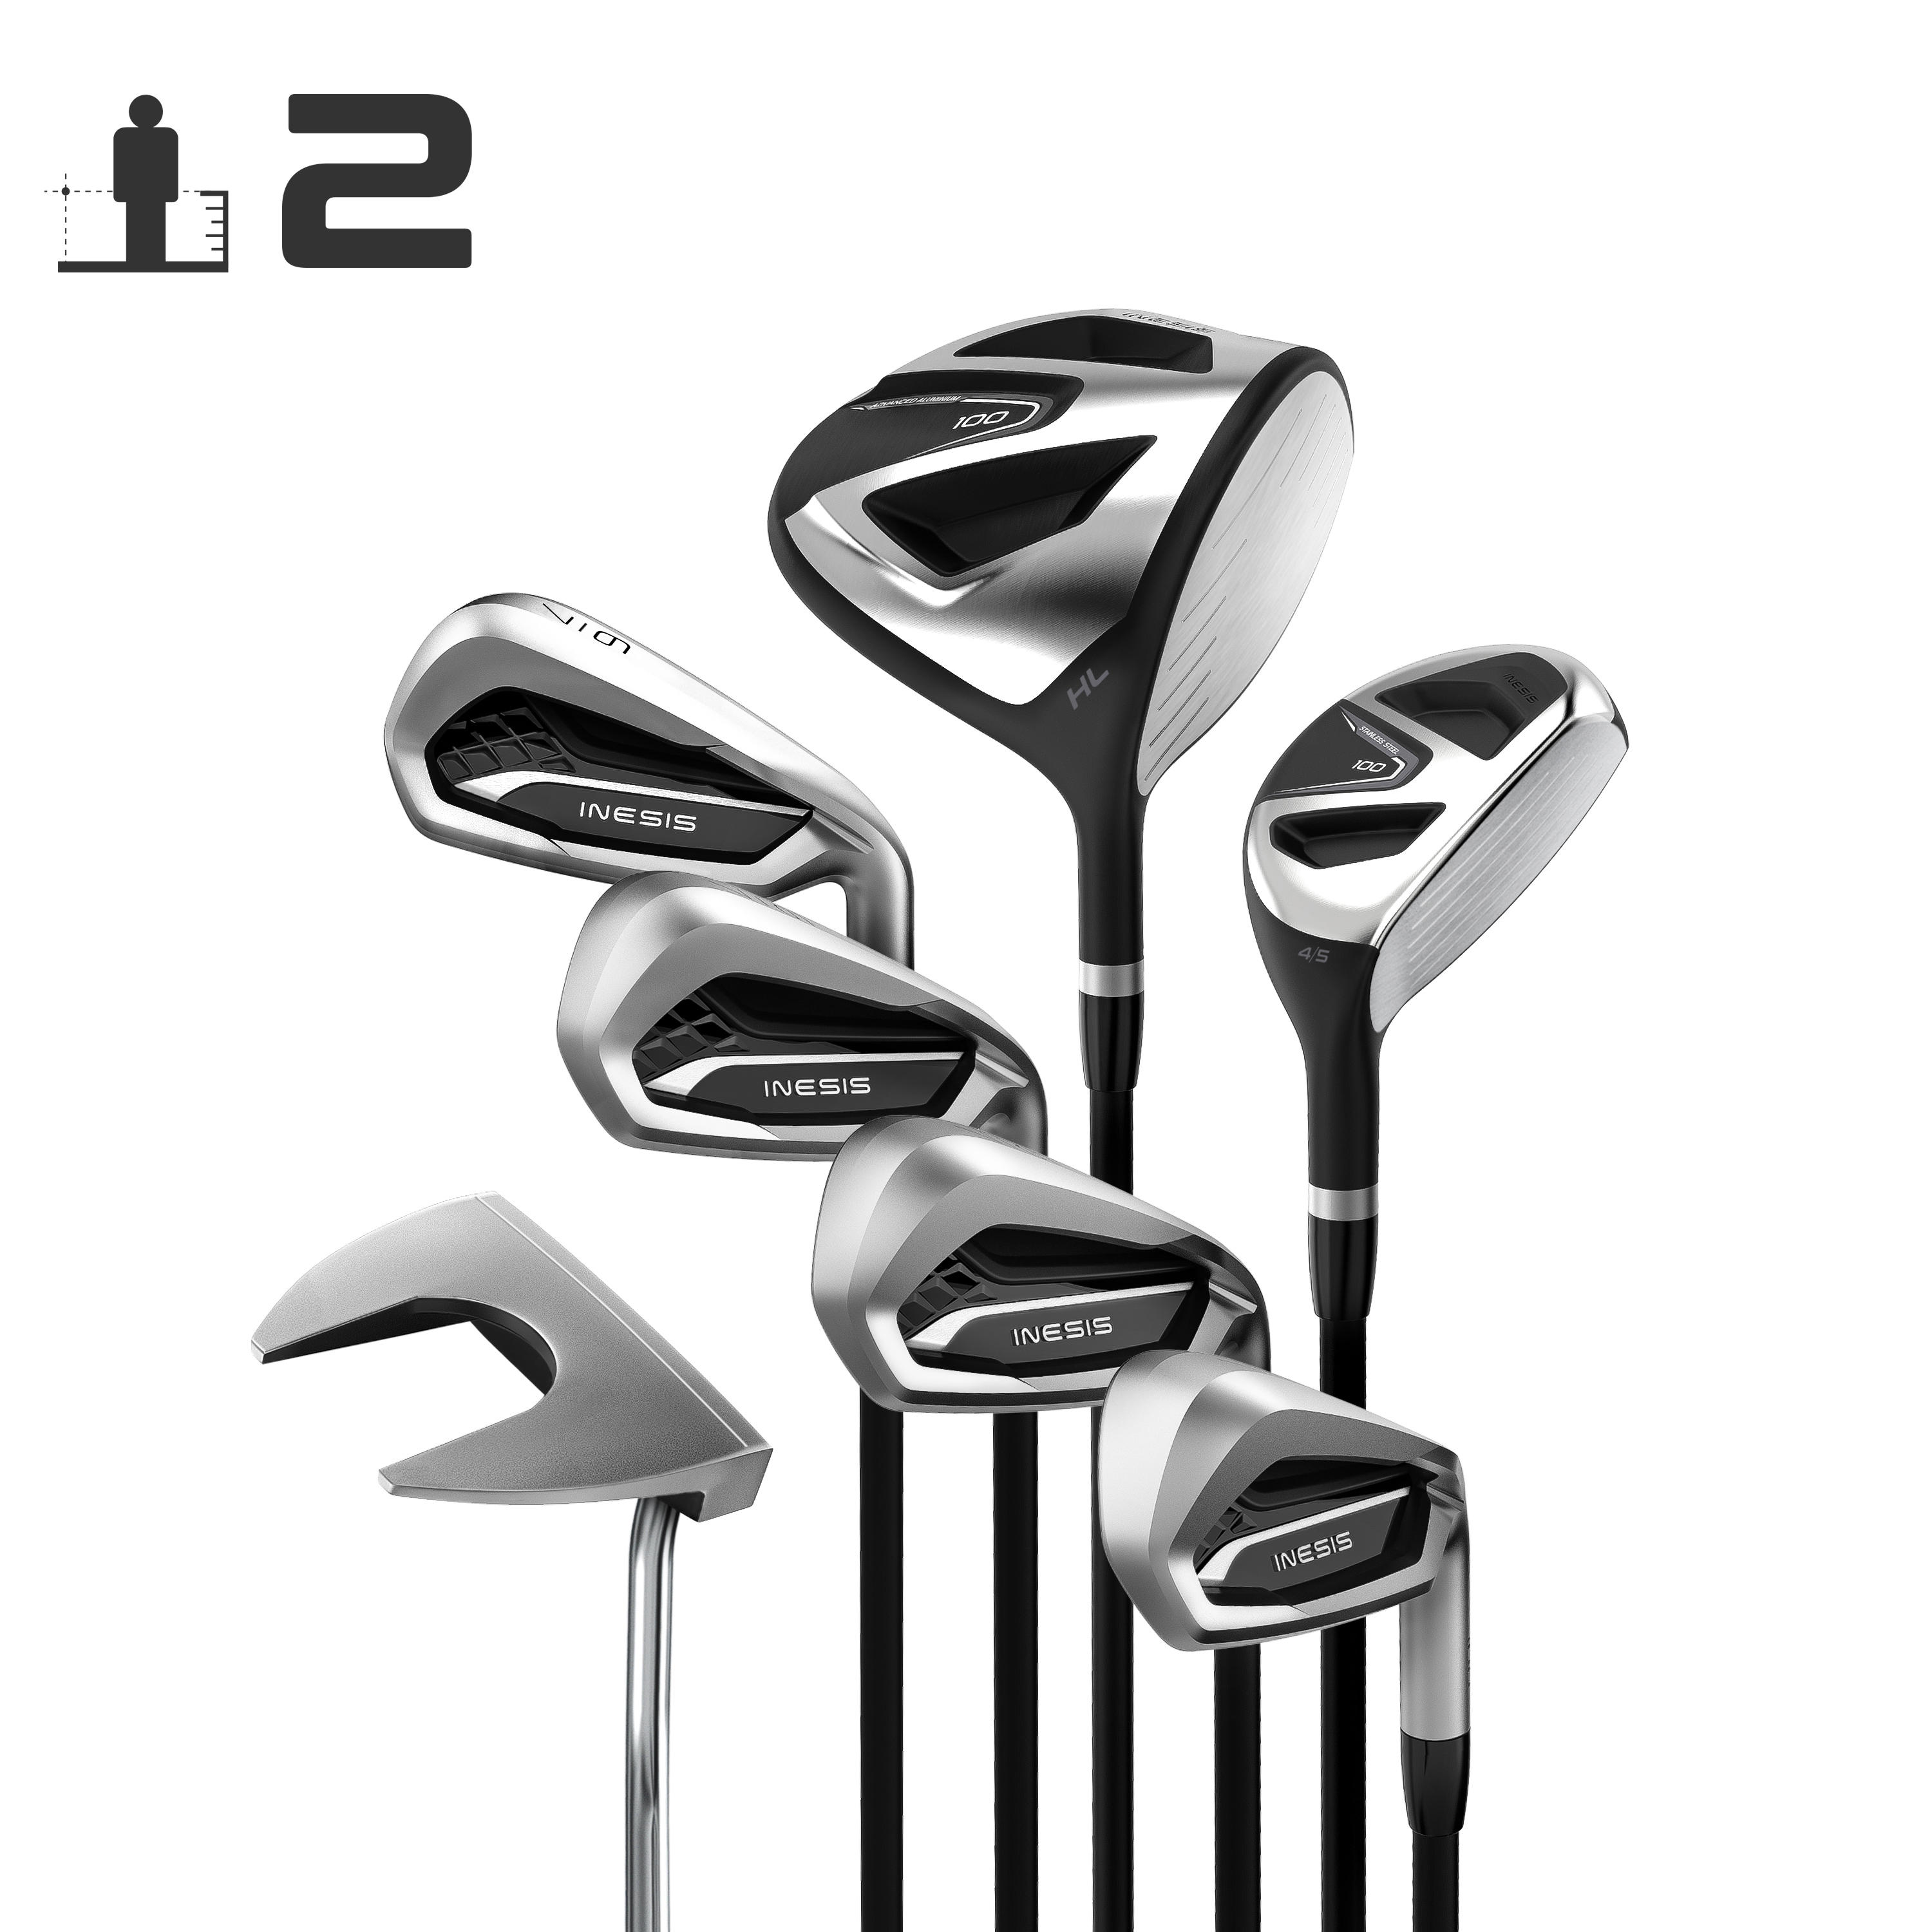 [ส่งฟรี ] ไม้กอล์ฟครบชุด ของแท้ ชุดไม้กอล์ฟก้านแกรไฟต์ 7 ไม้สำหรับผู้ใหญ่ถนัดขวารุ่น 100 (เบอร์ 2) GOLF CLUB SET ADULT GOLF KIT 7 CLUBS 100 REGULAR SIZE 2 - GRAPHITE Golf clubs set MEN WOMEN ไม้กอล์ฟหัวเหล็ก ของแท้ รับประกัน 2 ปี